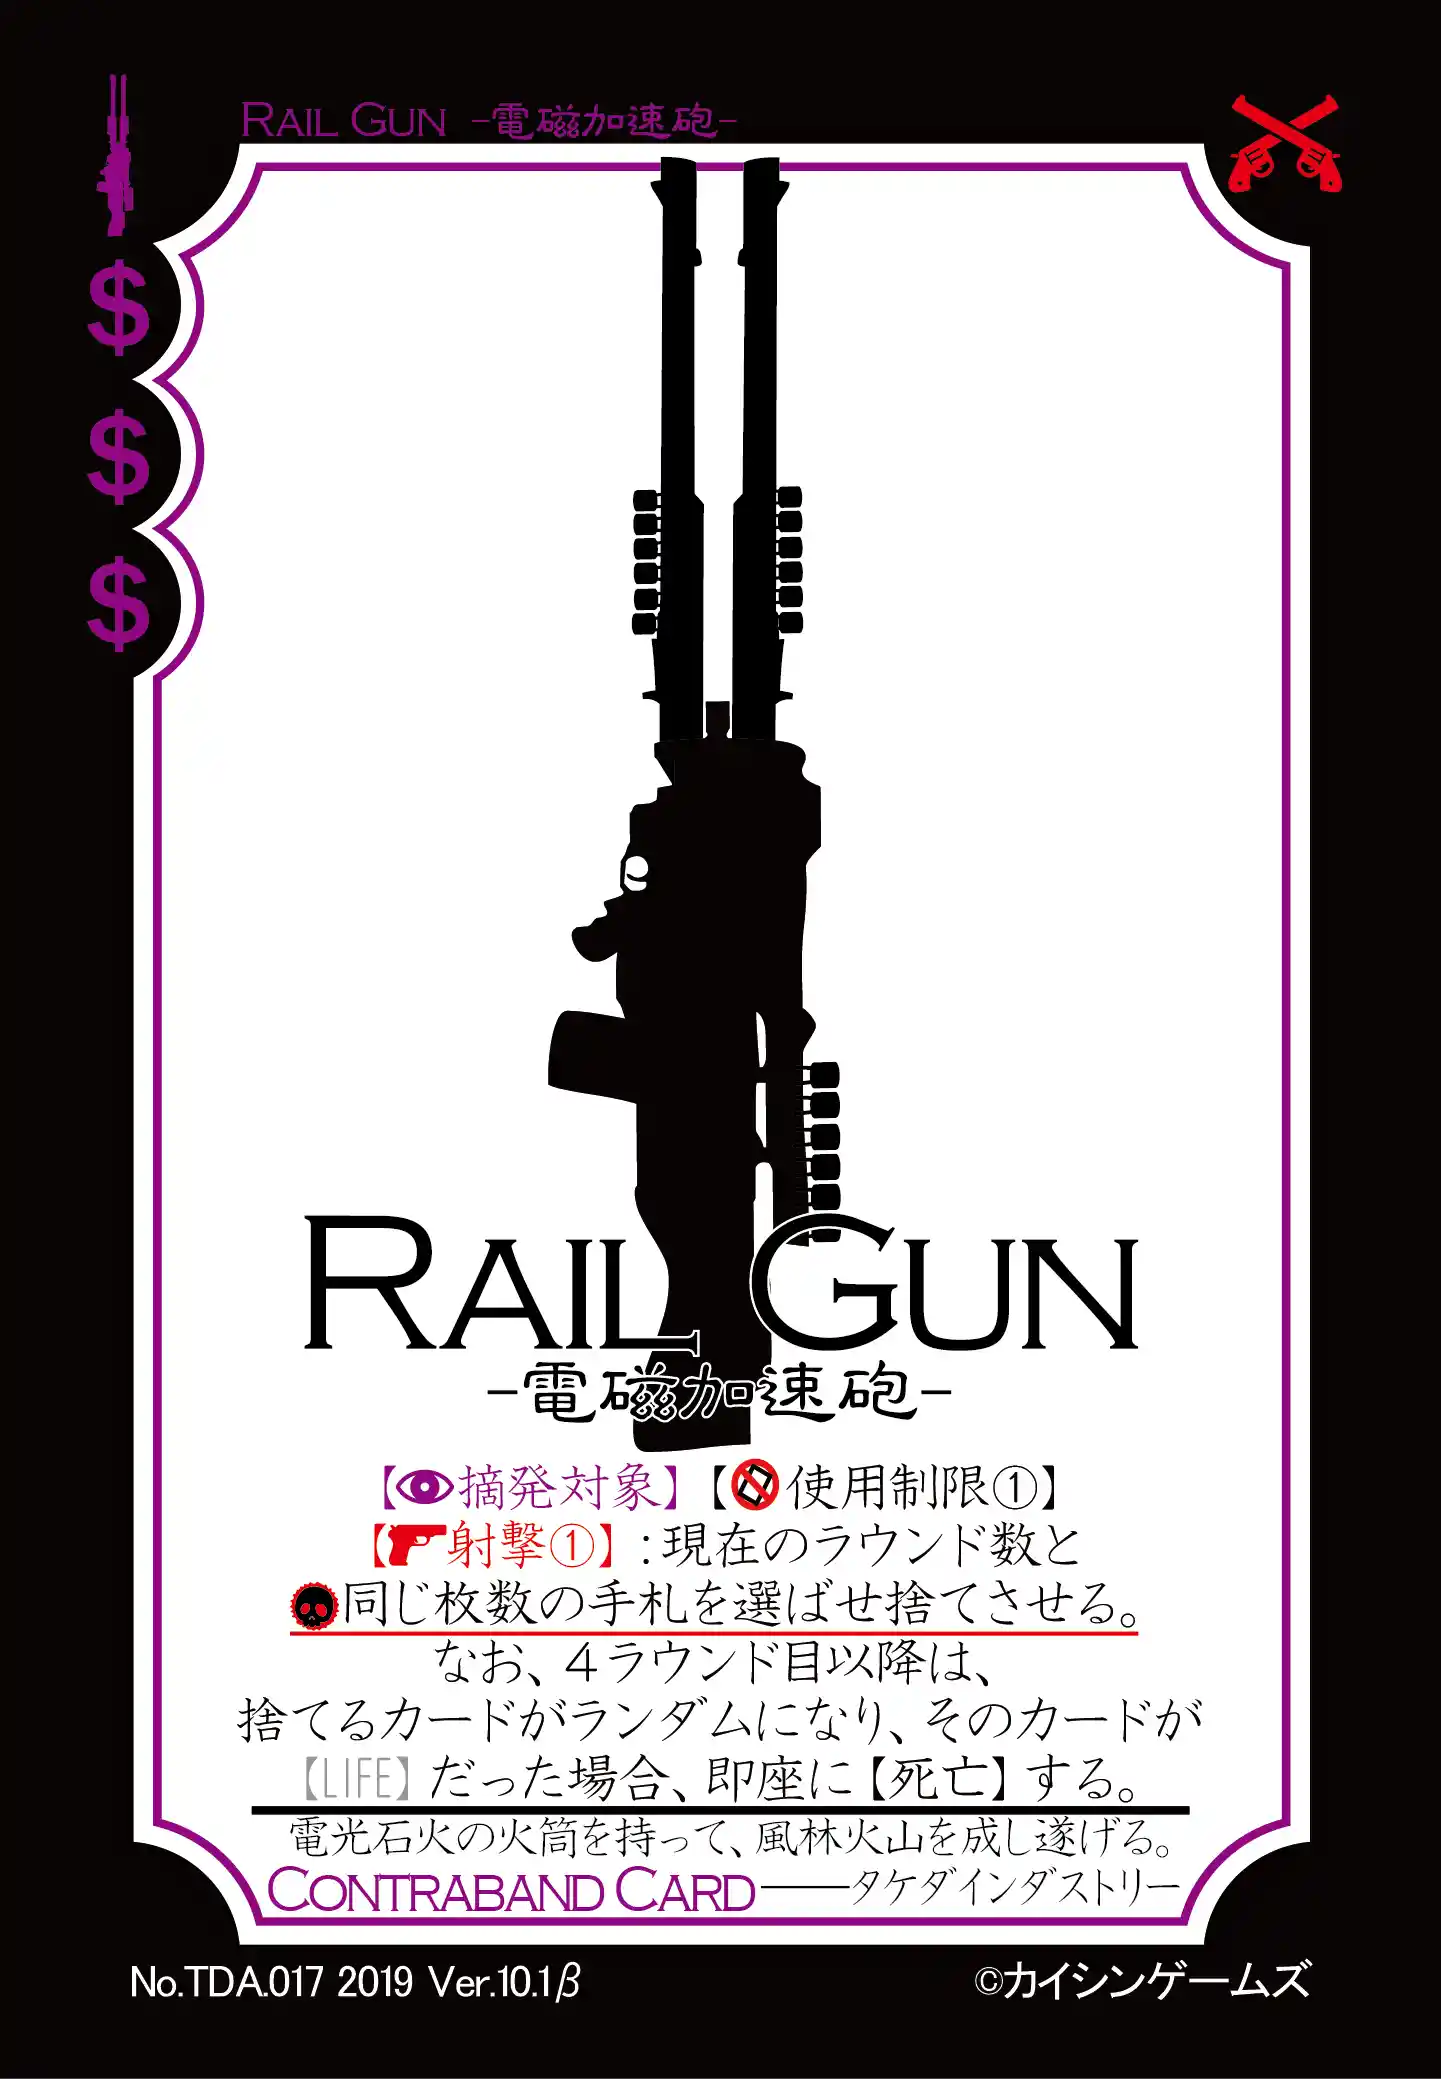 RAIL GUN